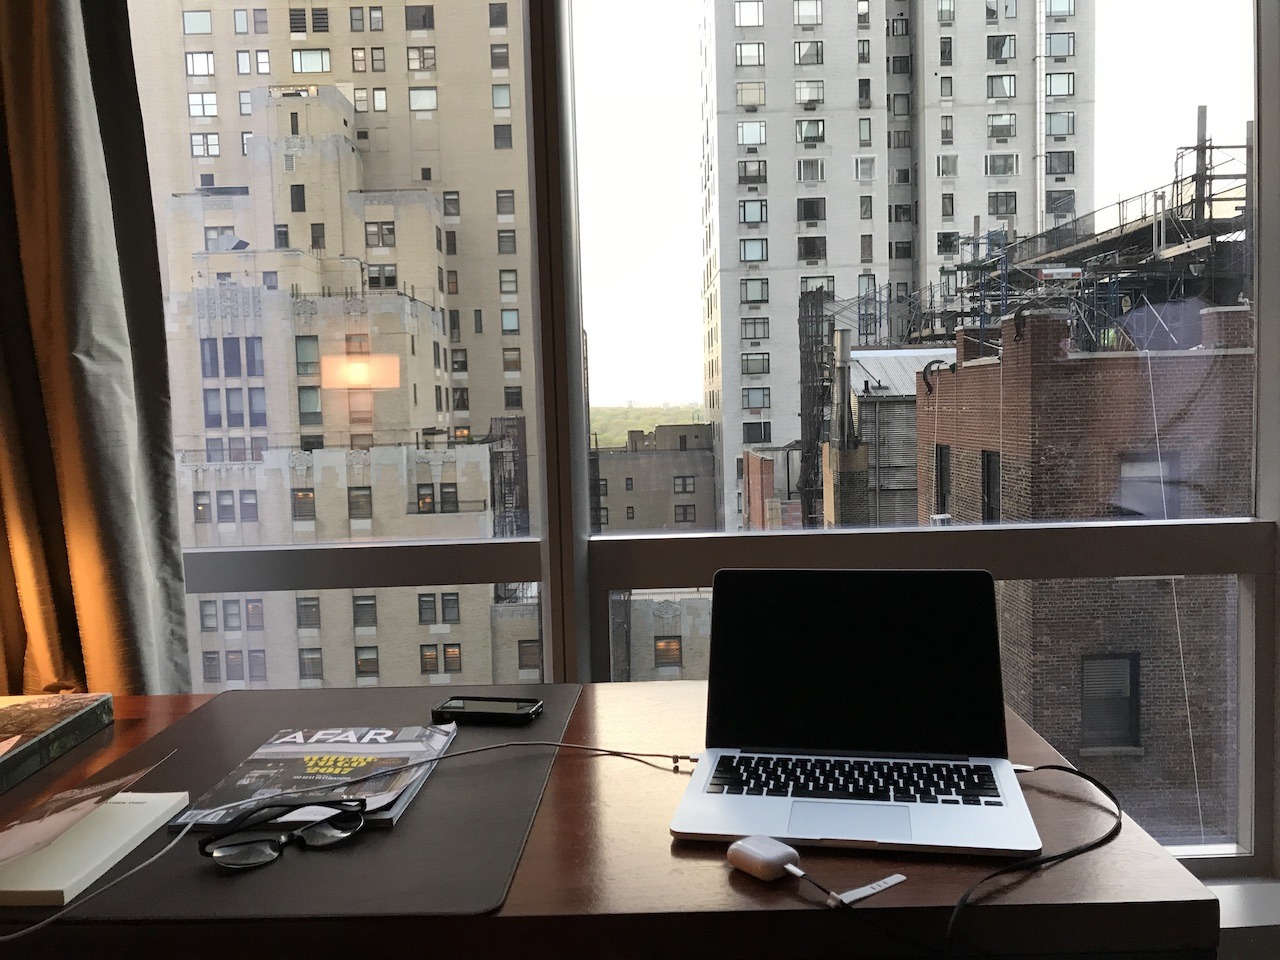 Park Hyatt New York desk with view